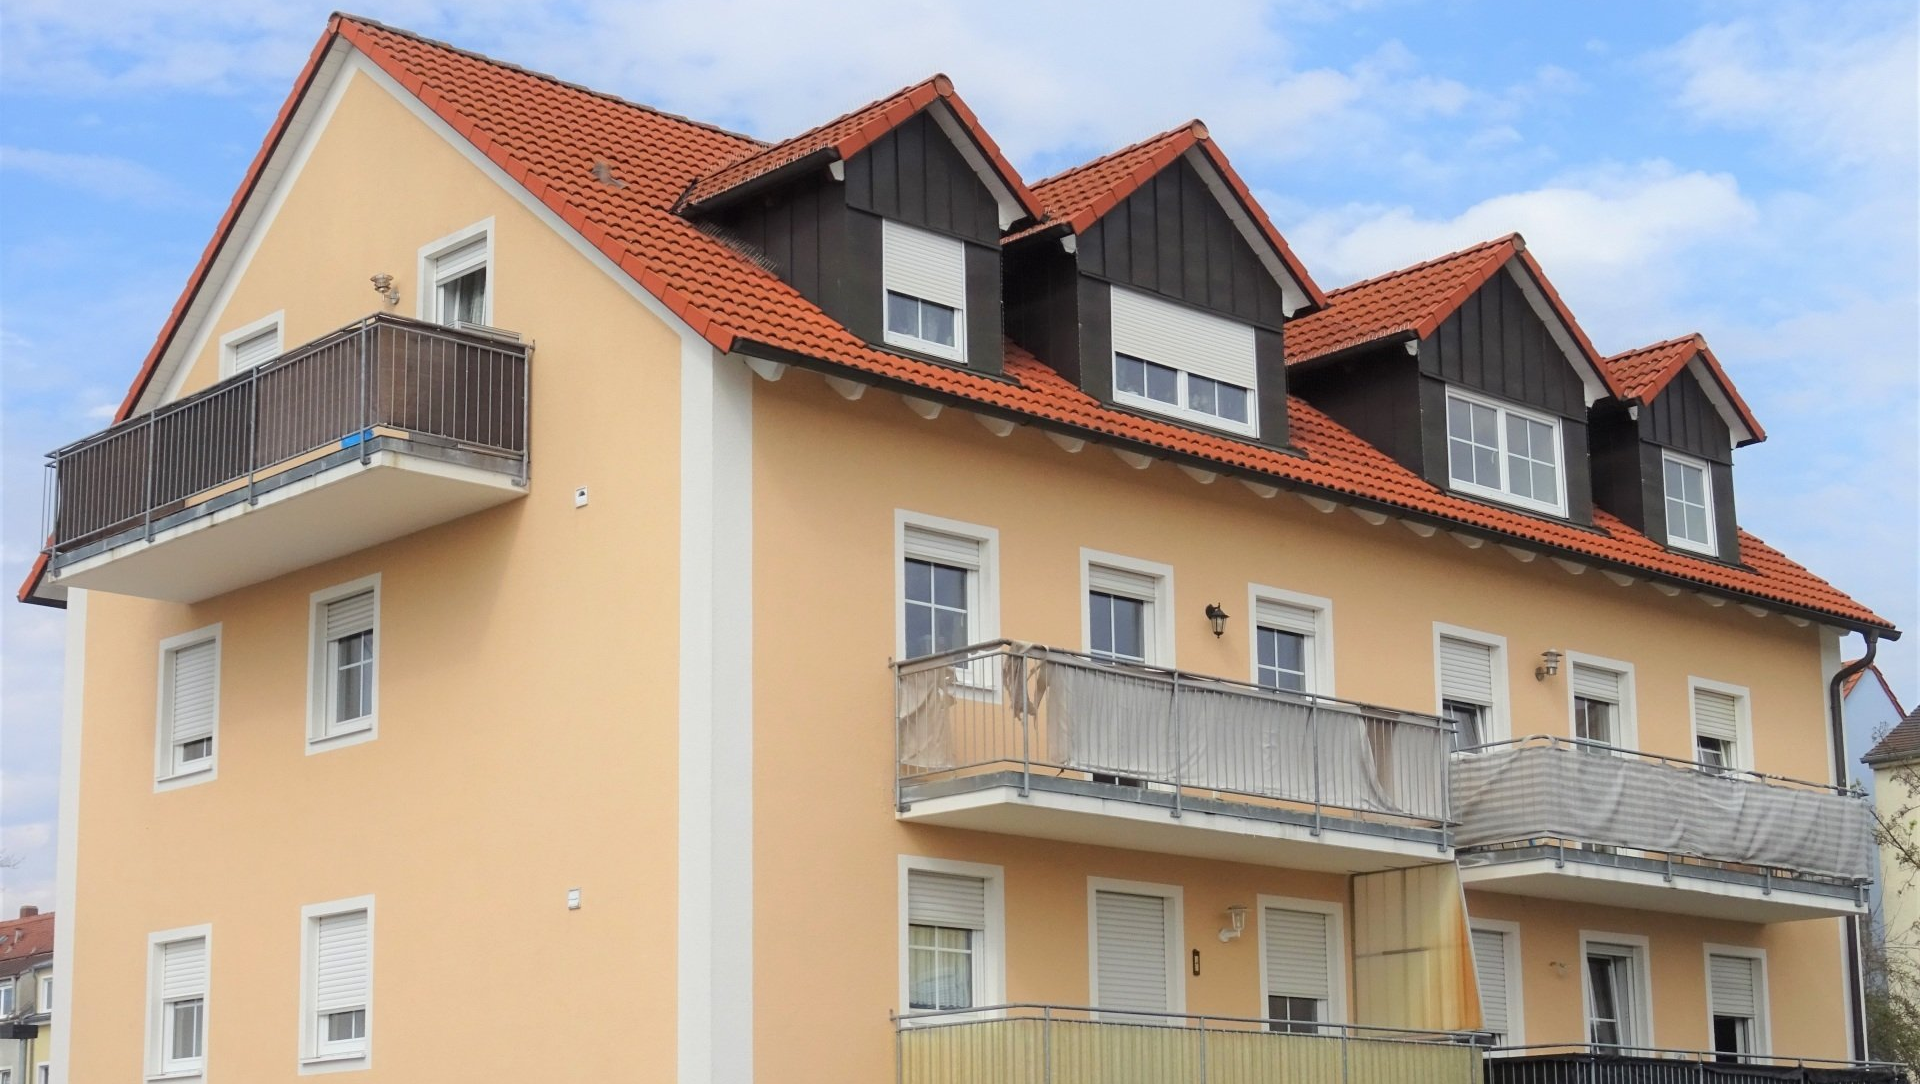 2-zimmer-dachgeschosswohnung_bluecherstrasse_ingolstadt